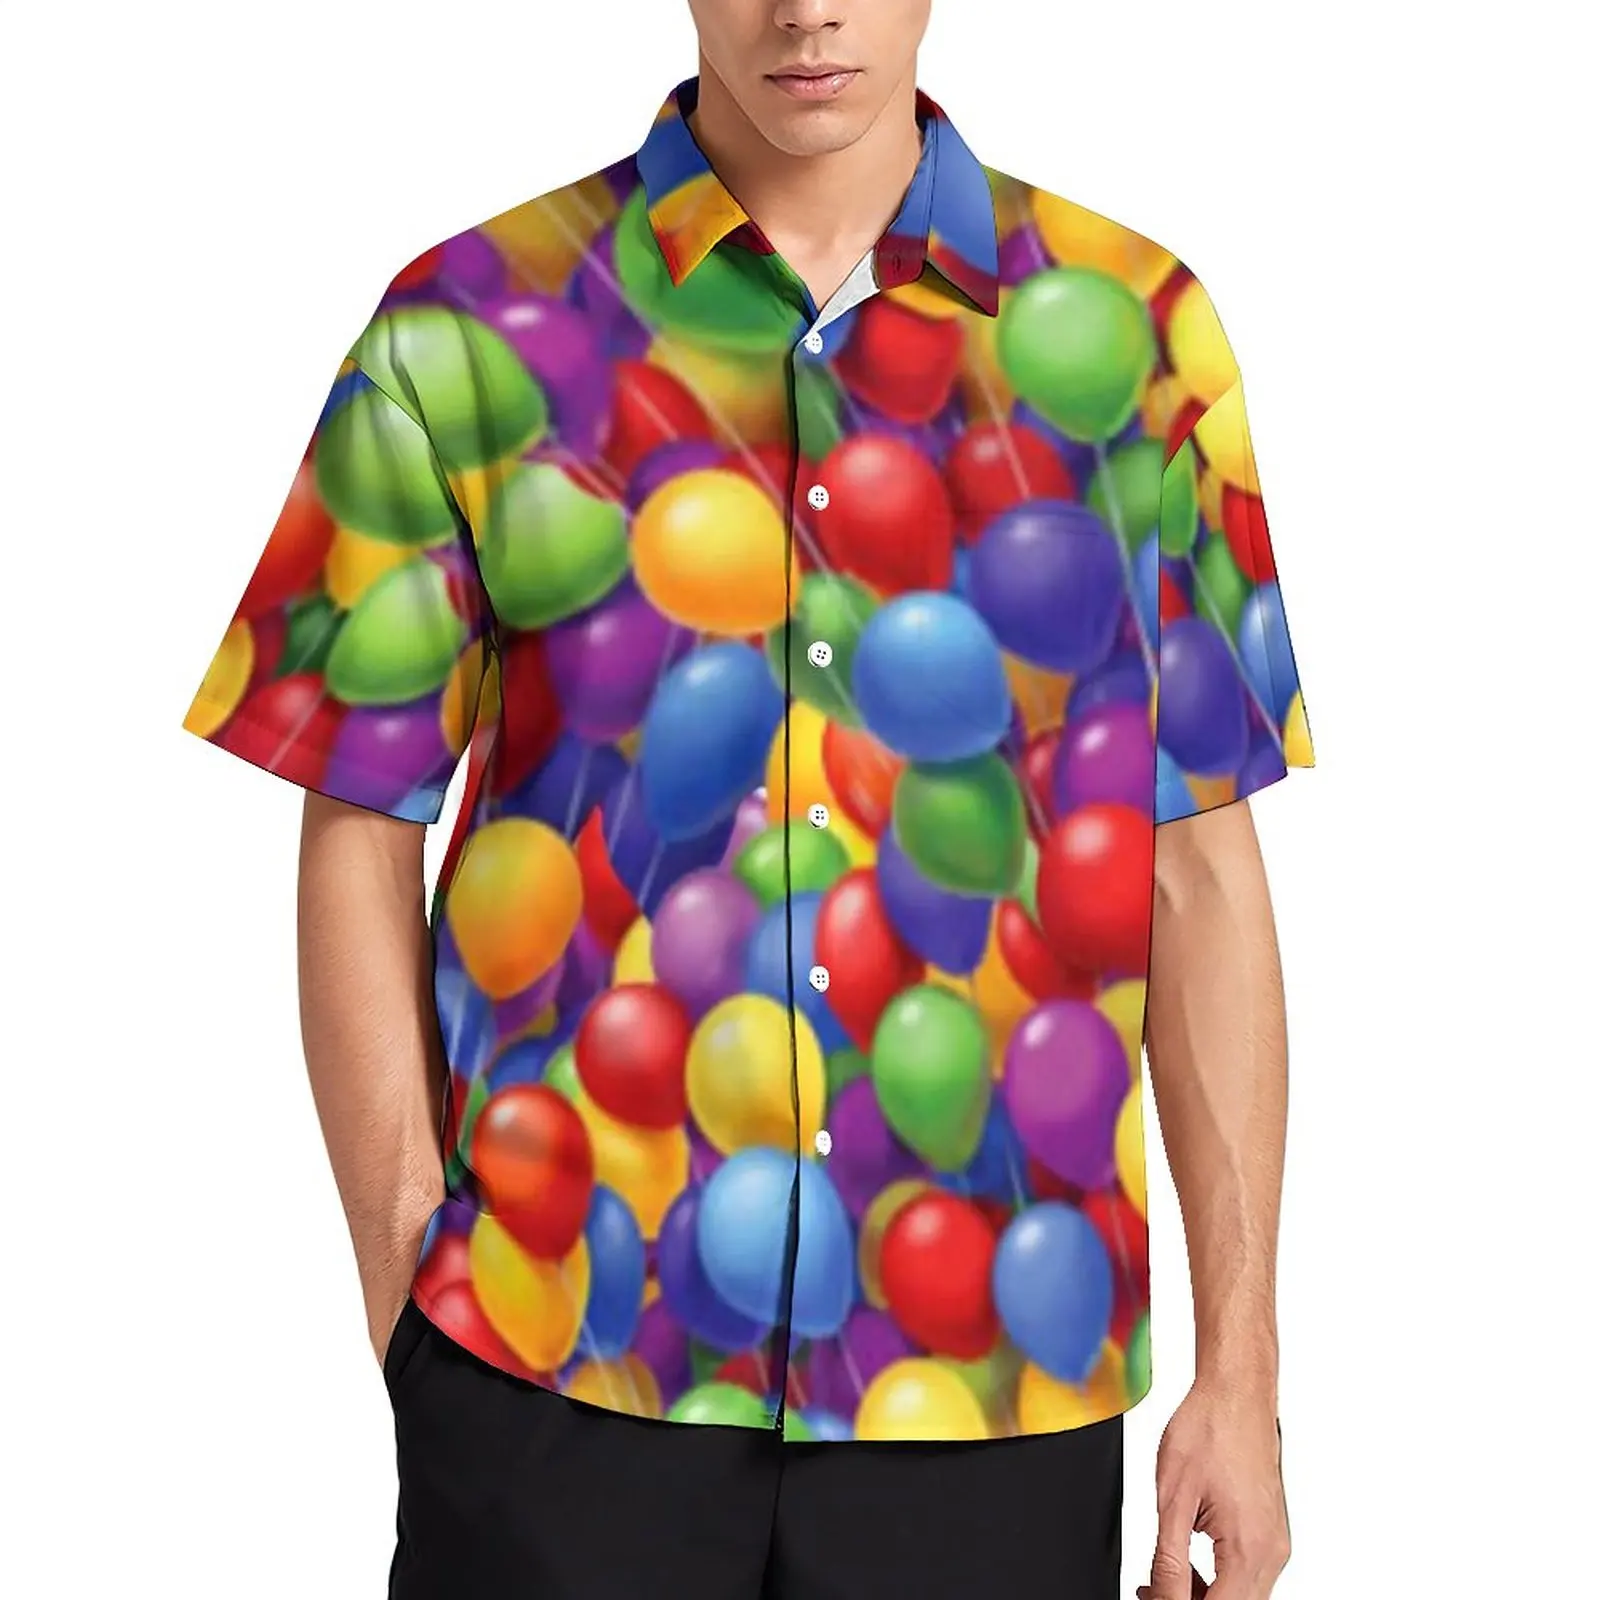 

Красочные воздушные шары гавайская рубашка мужские яркие Воздушные шары с рисунком Фото короткий рукав уличный стиль оверсайз